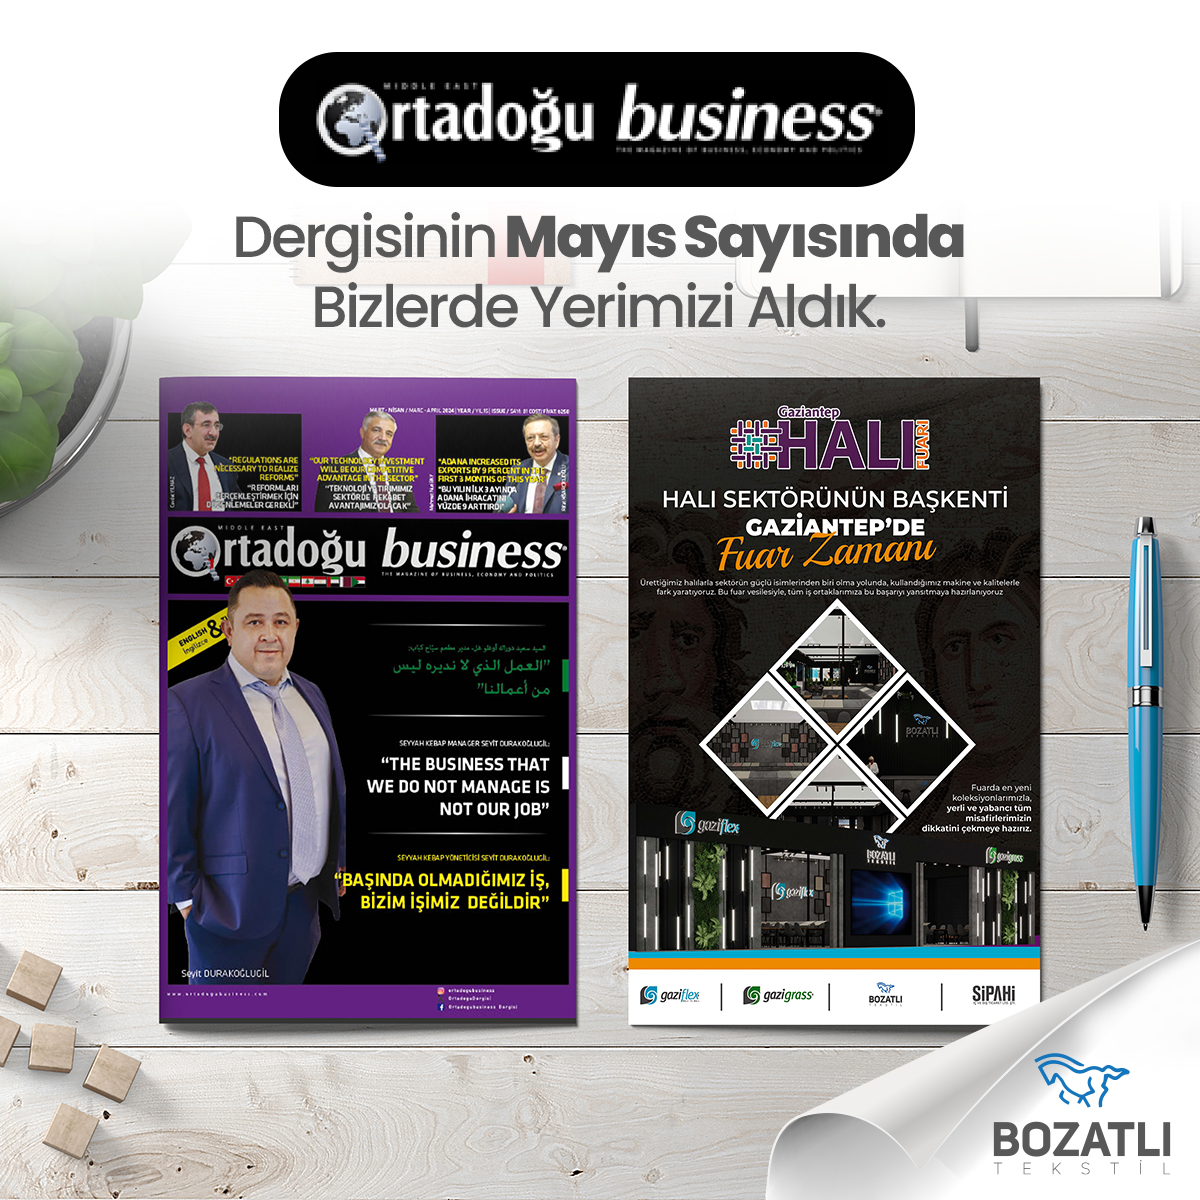 Ortadoğu Business Dergisi Mayıs Sayısında Bizlerde Yerimizi Aldık.

#bozatlitekstil #bozatliiplik #sipahi

#gaziflex #gazigrass